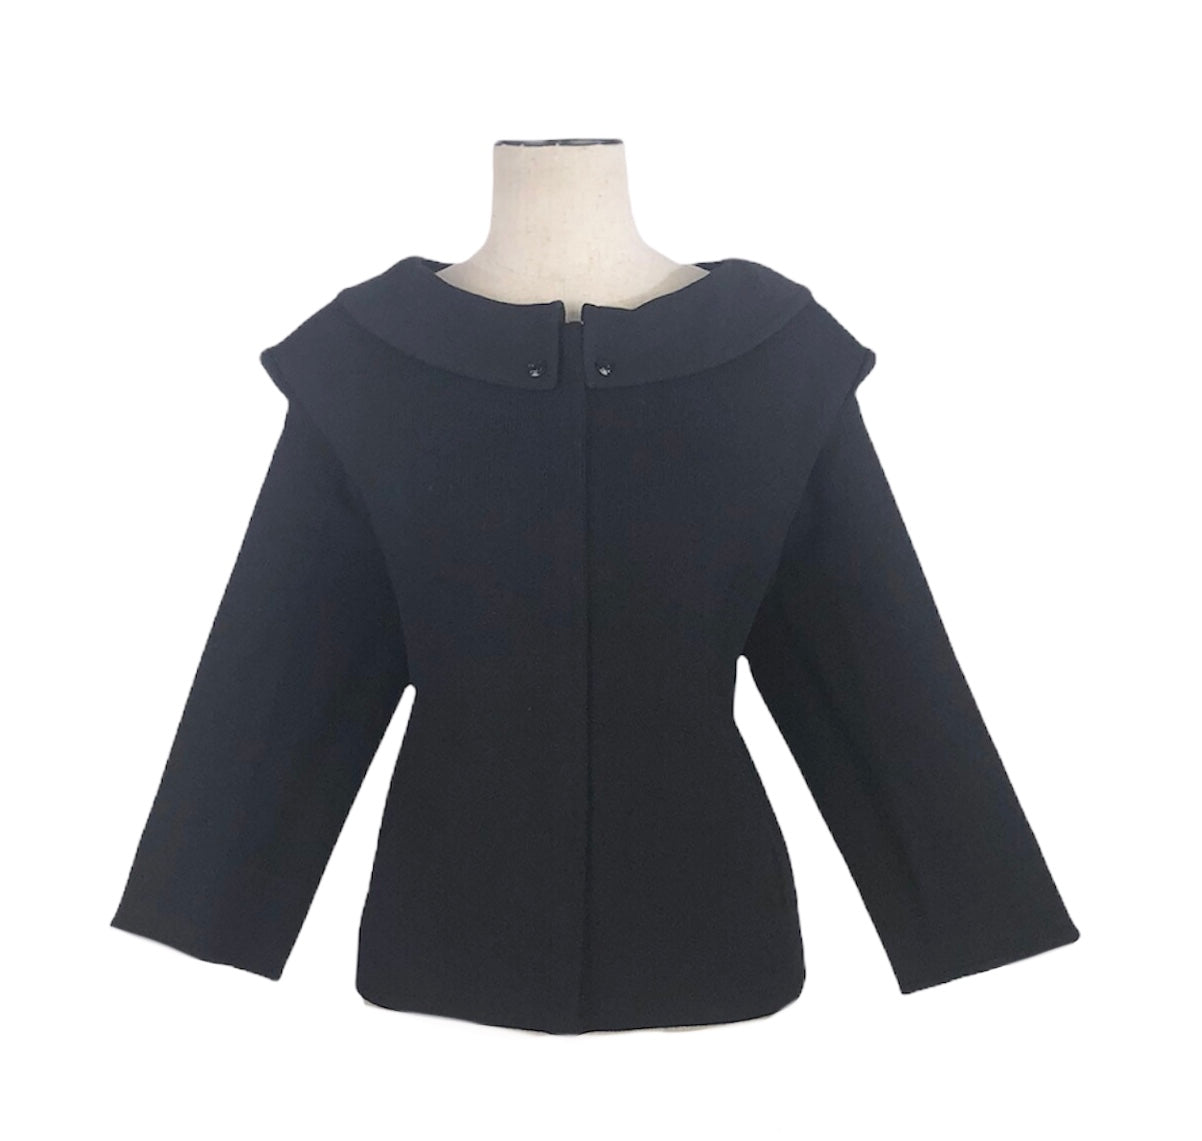 Black Knit Jacket 3/4 Sleeve Jacket | Size 14